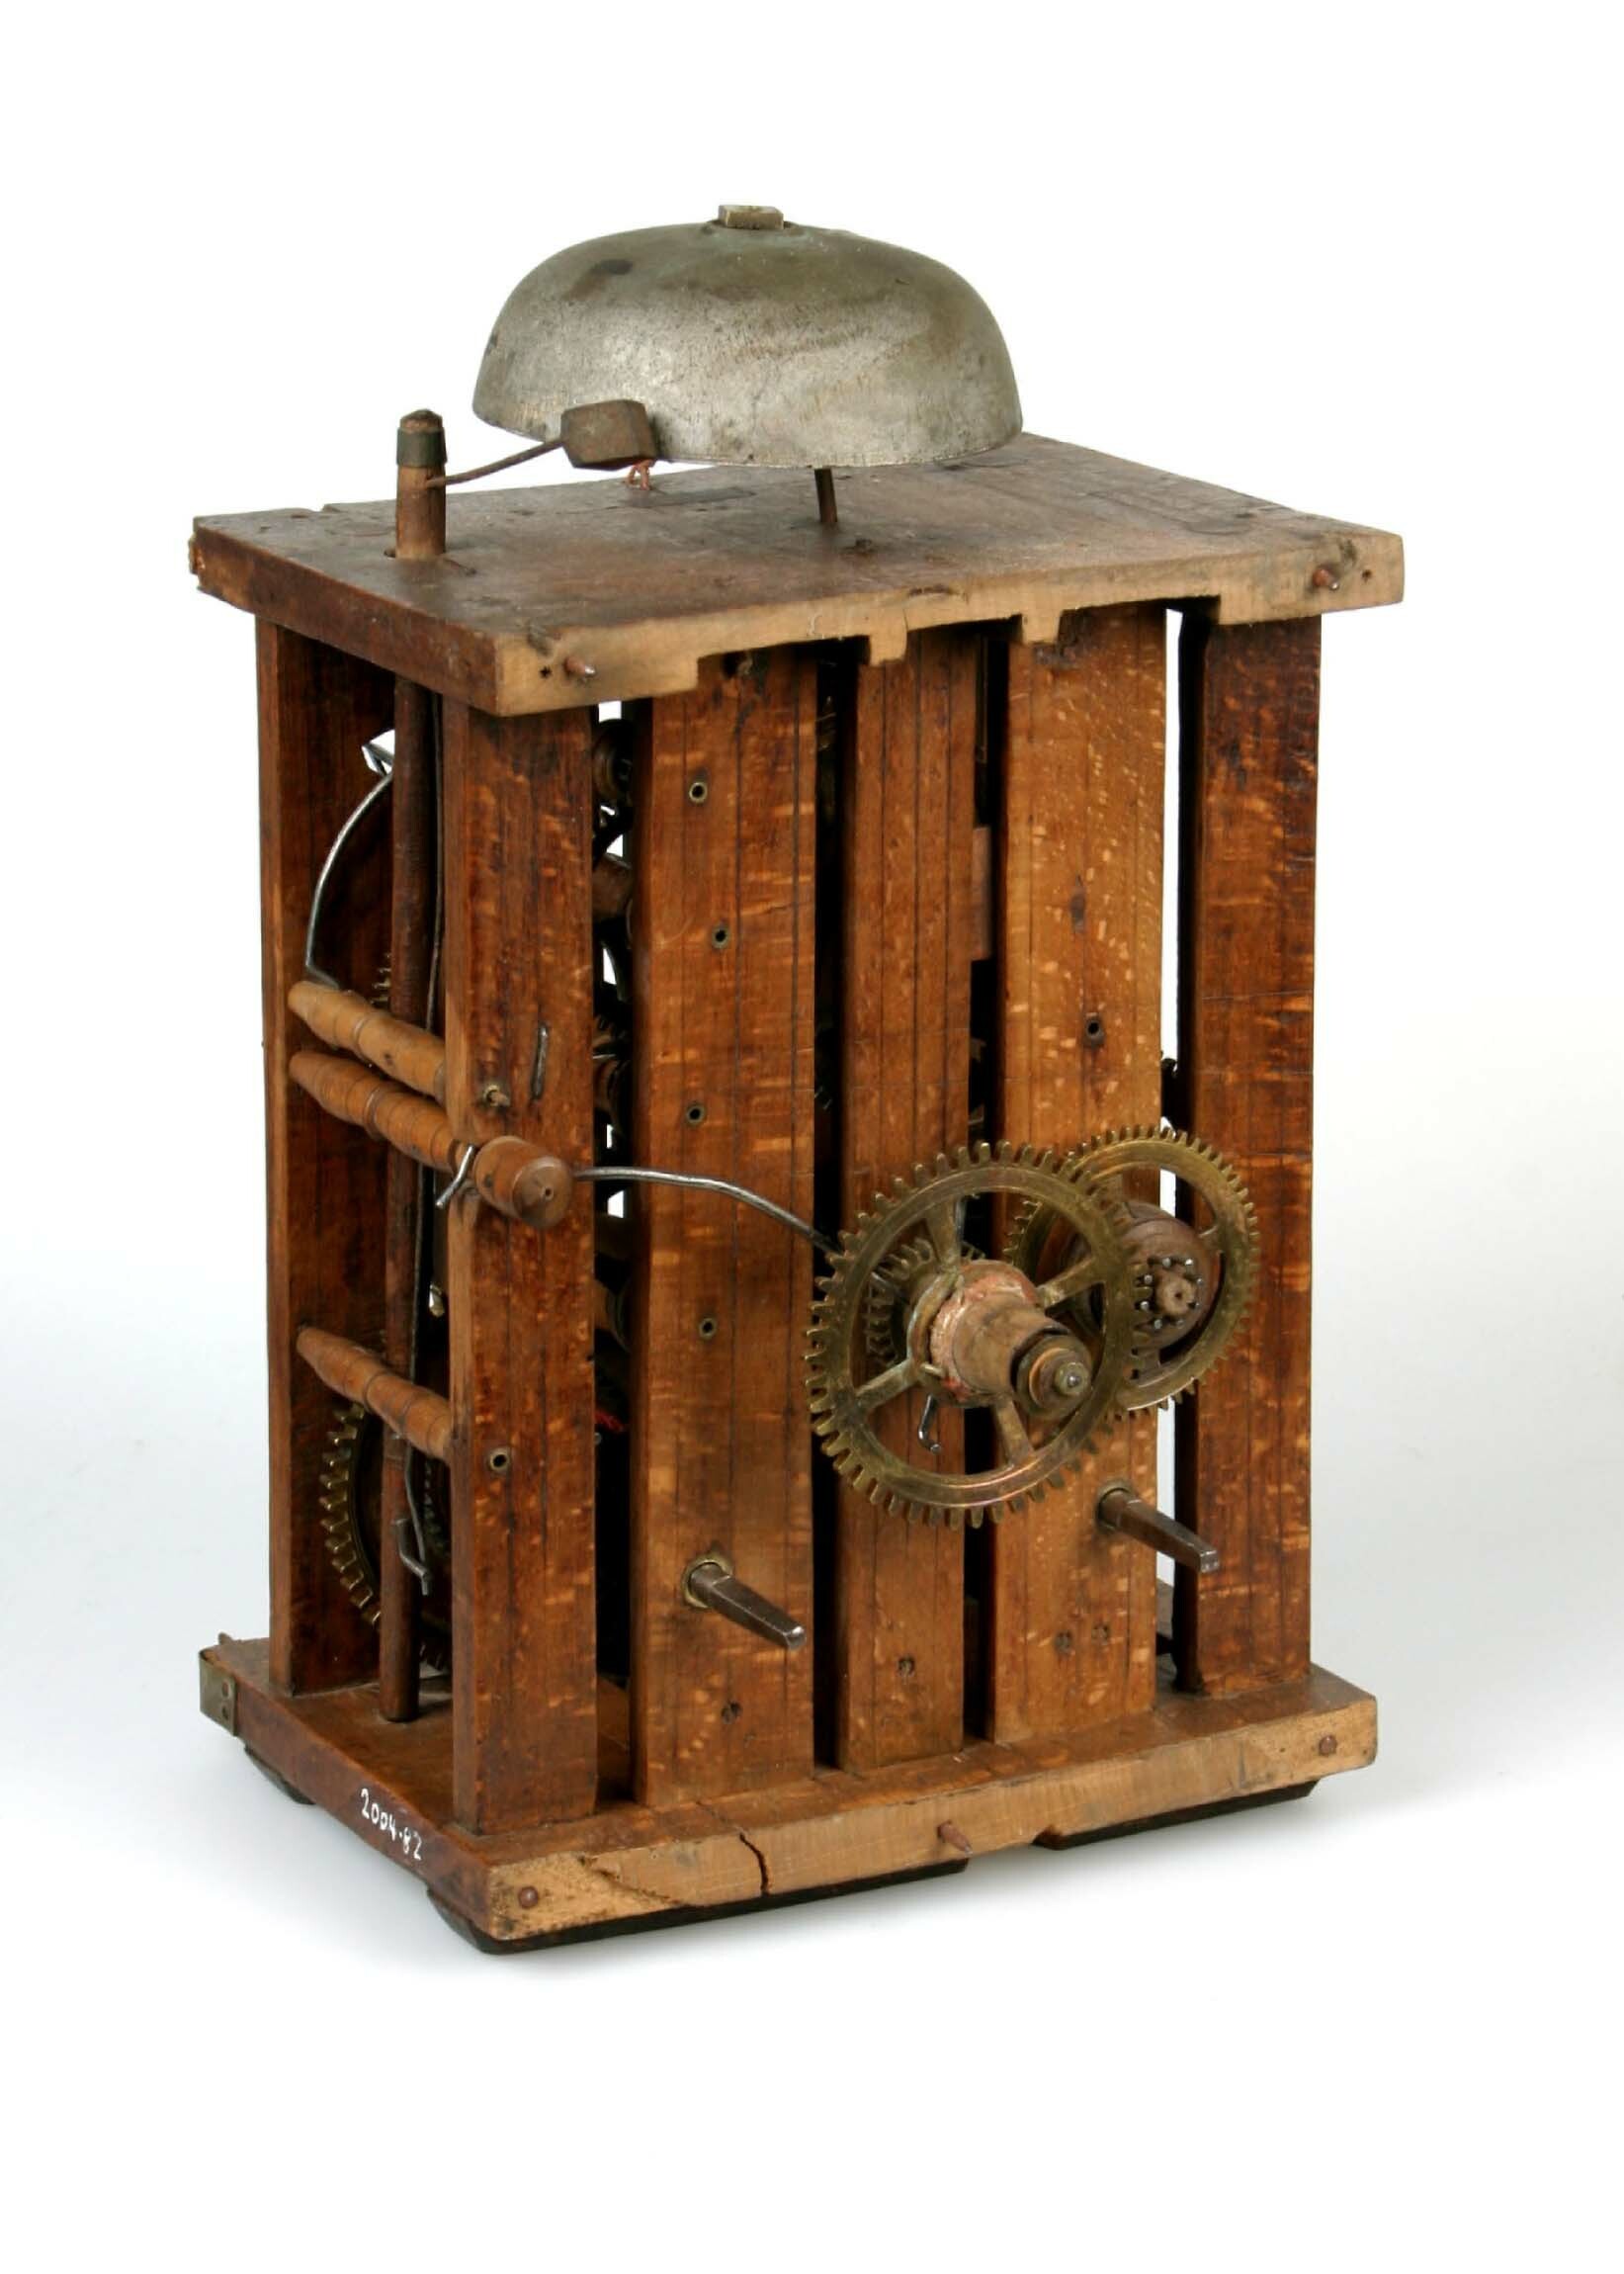 Uhrwerk, wohl Johannes Scherzinger, Rötenbach, um 1790 (Deutsches Uhrenmuseum CC BY-SA)